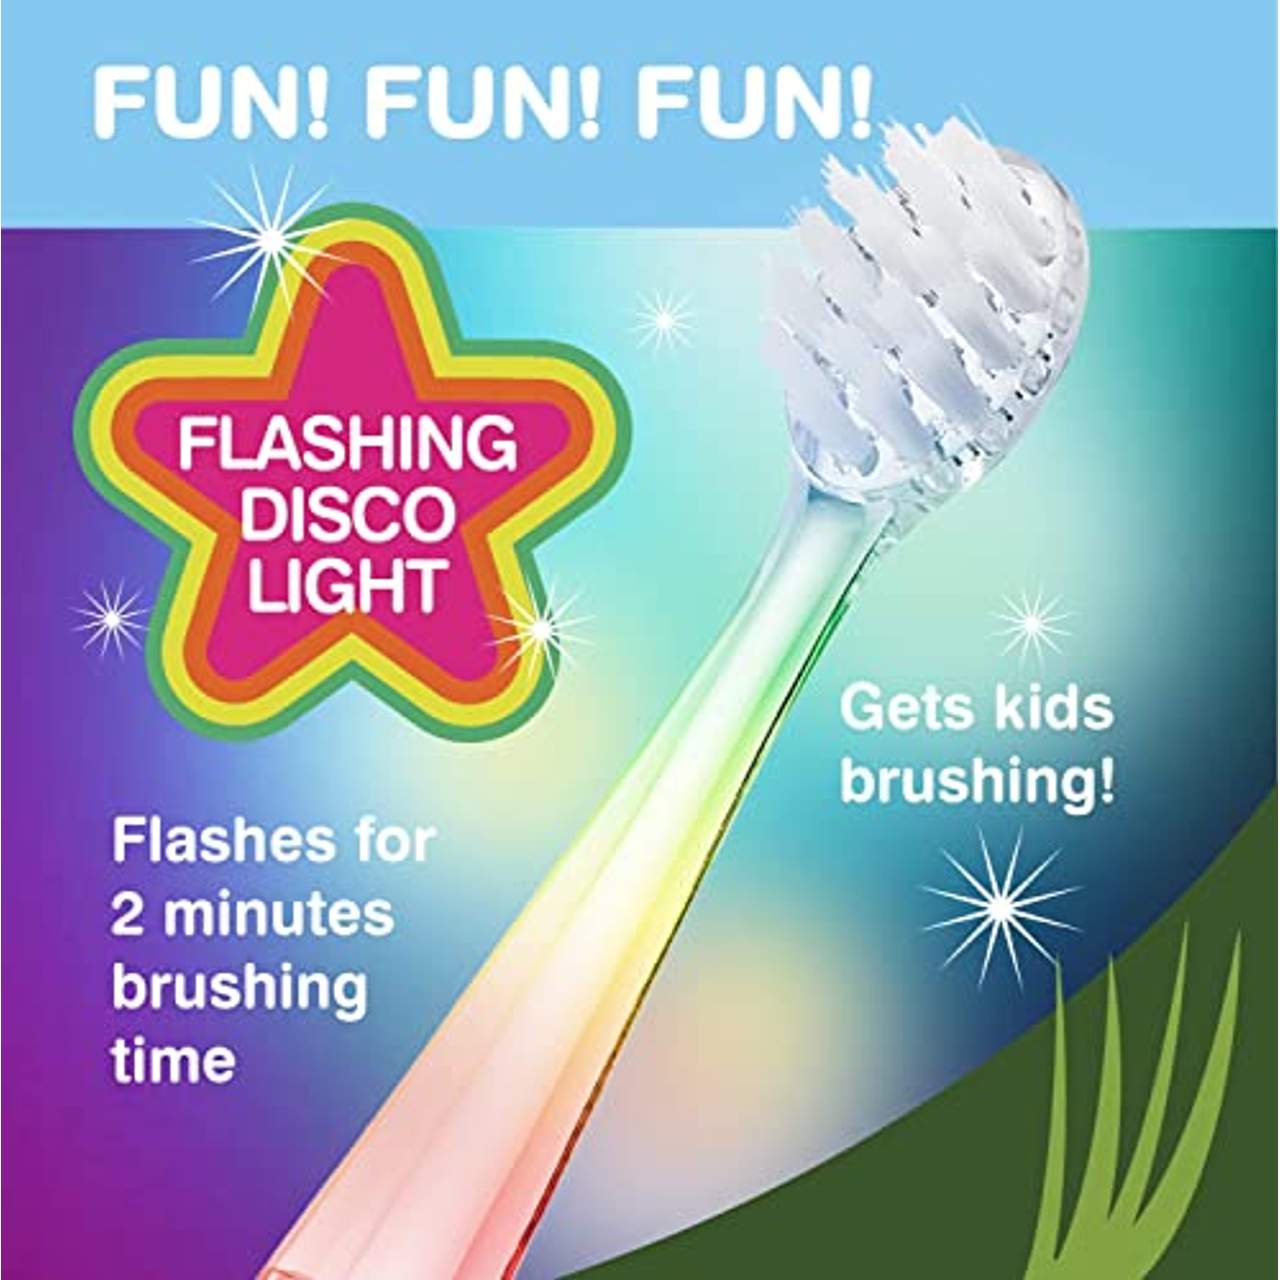 Brush-Baby WildOnes Kinder Elektrische Wiederaufladbare Zahnbürste